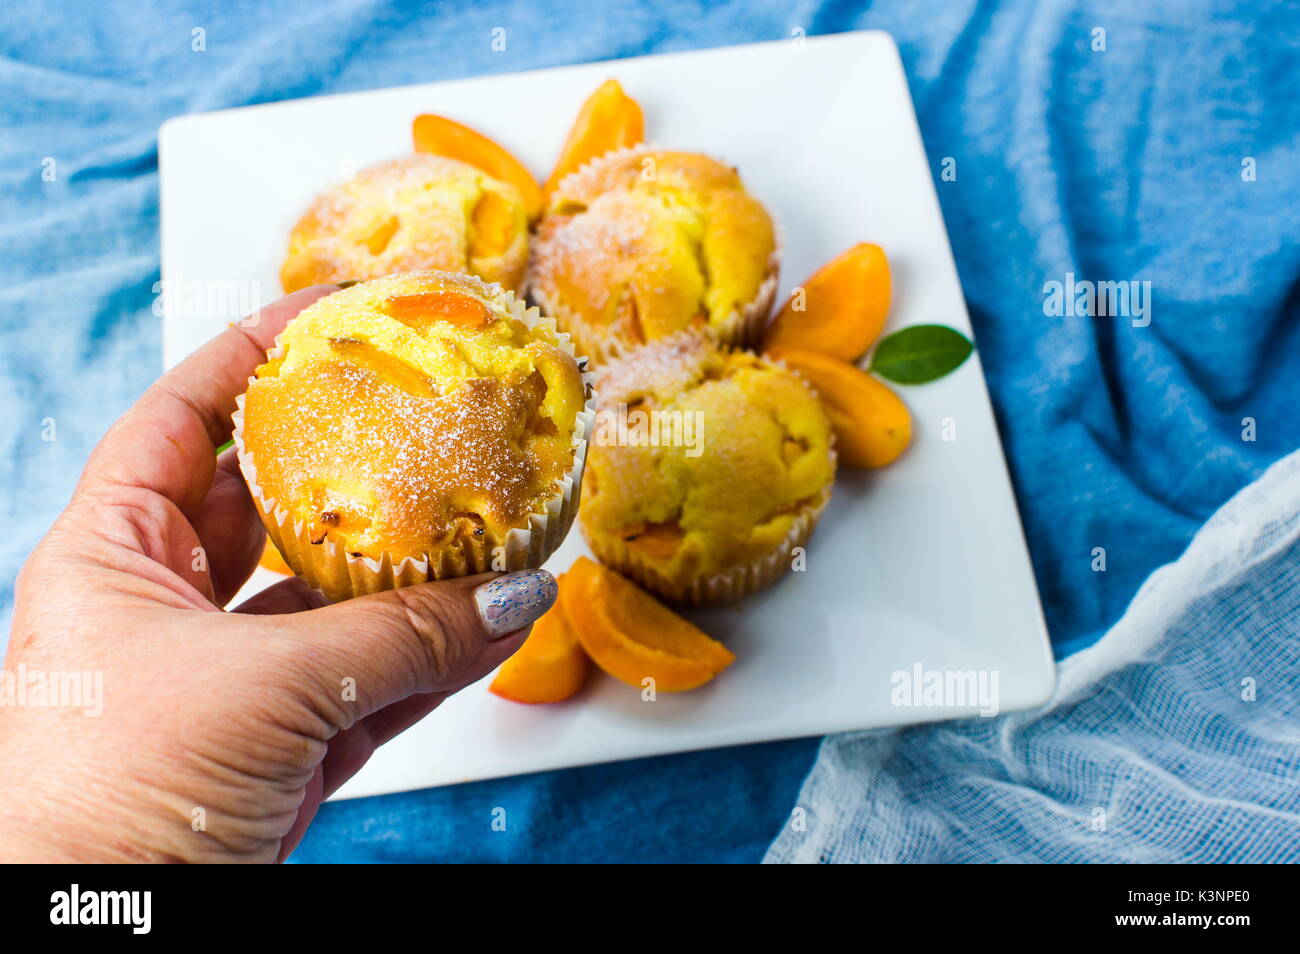 Muffins à l'abricot fait maison avec des fruits dans un bol Banque D'Images